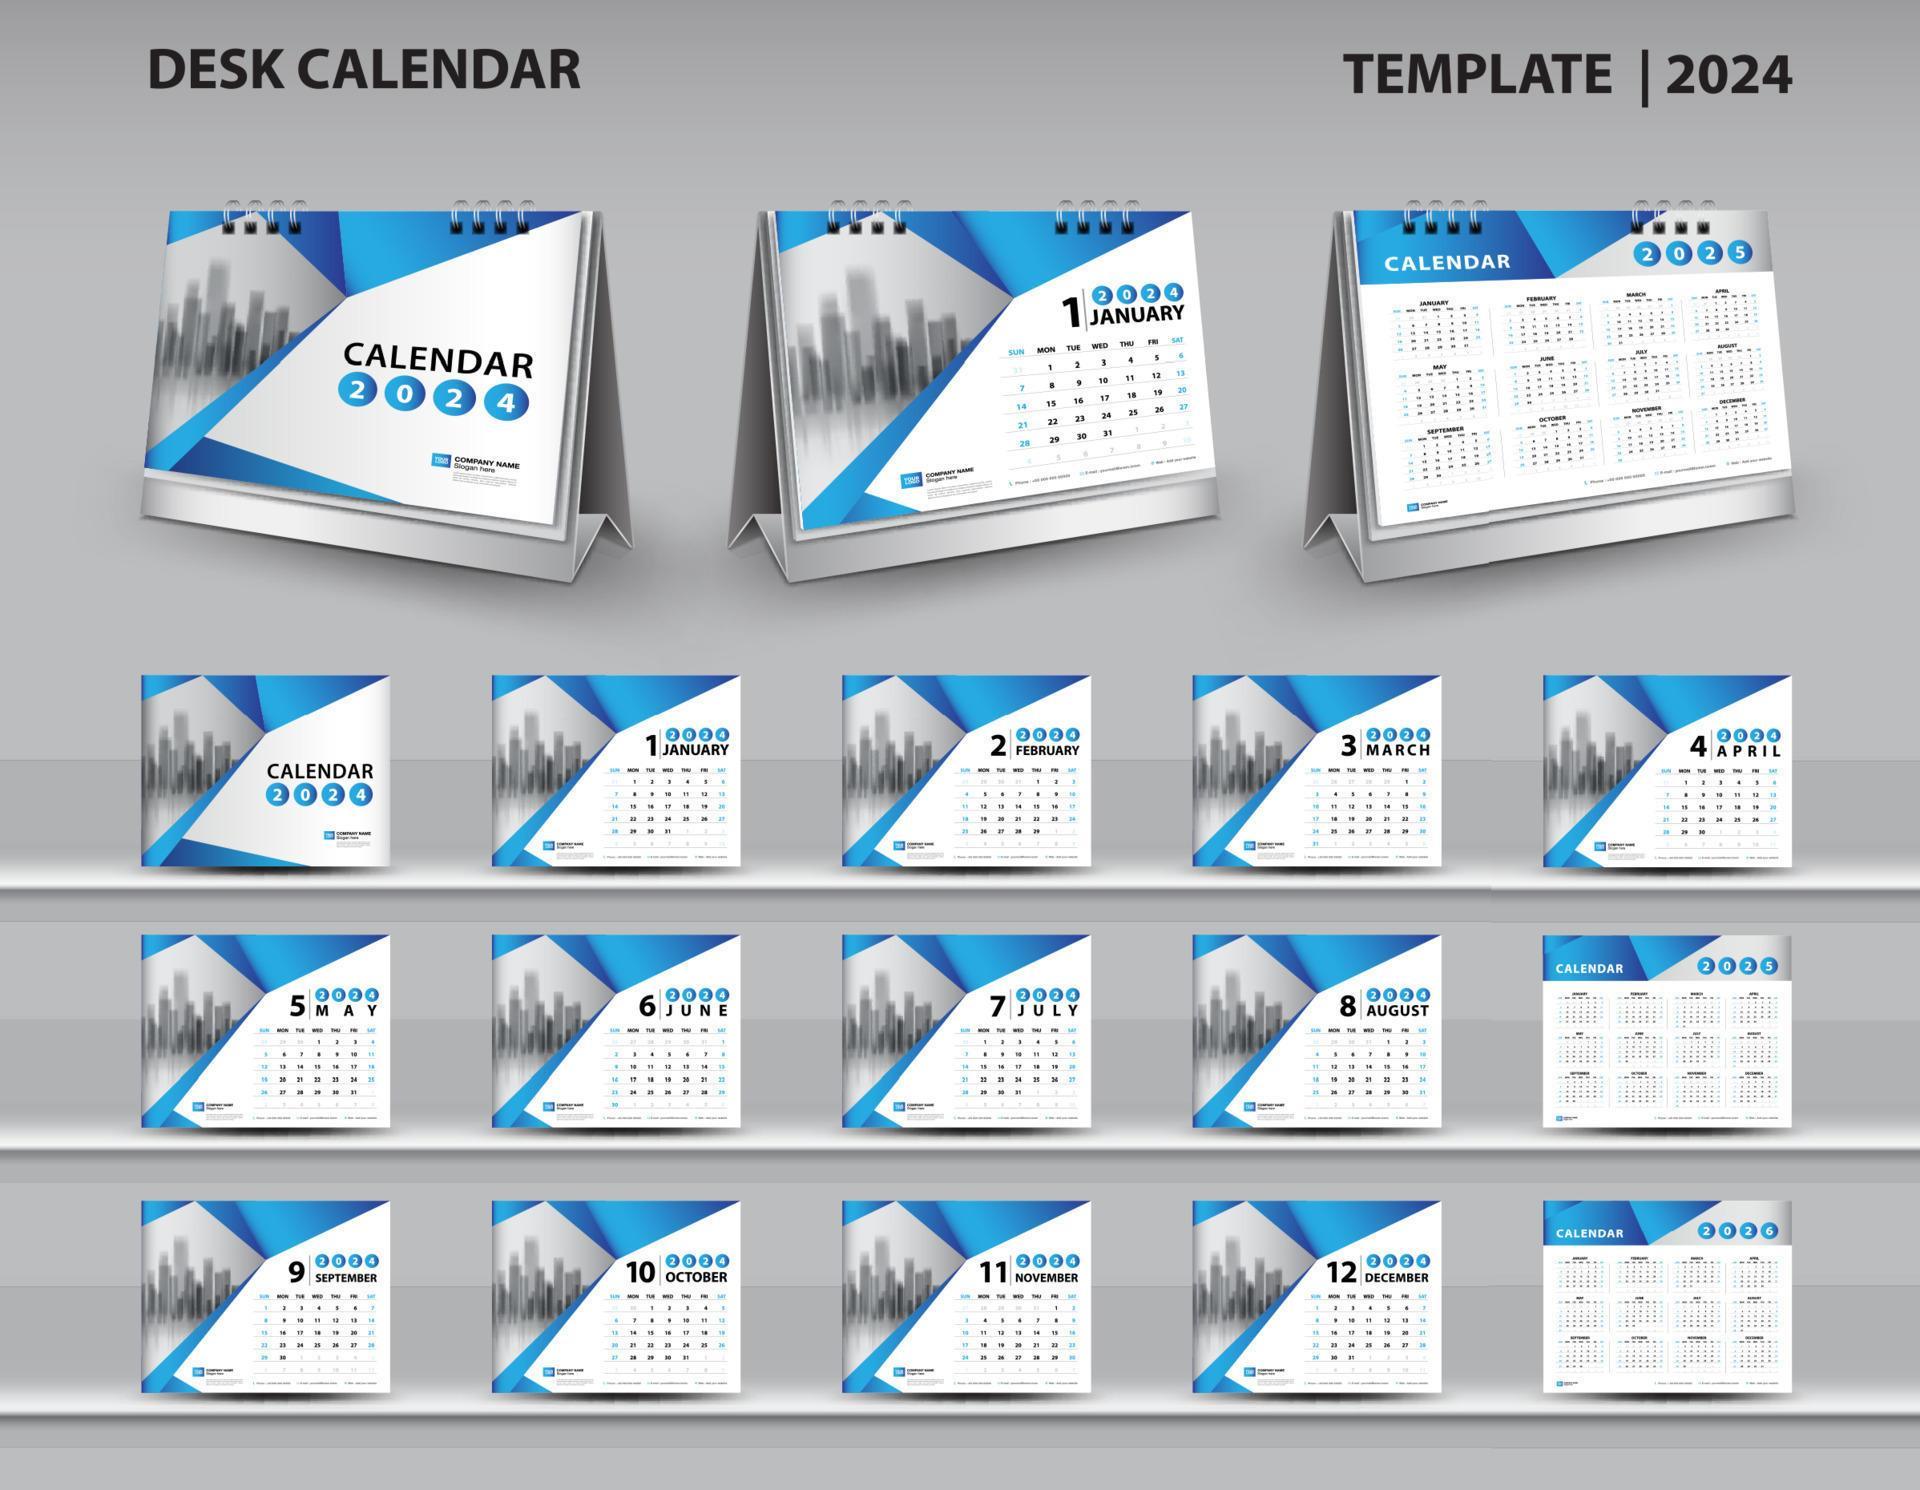 Calendar 2024 2025 2026 Template Desk Calendar 2024 Design Wall Calendar 2024 Year 3d Calendar Mockup Blue Cover Design Set Of 12 Months Week Starts Sunday Planner Flyer Design Vecto Vector 